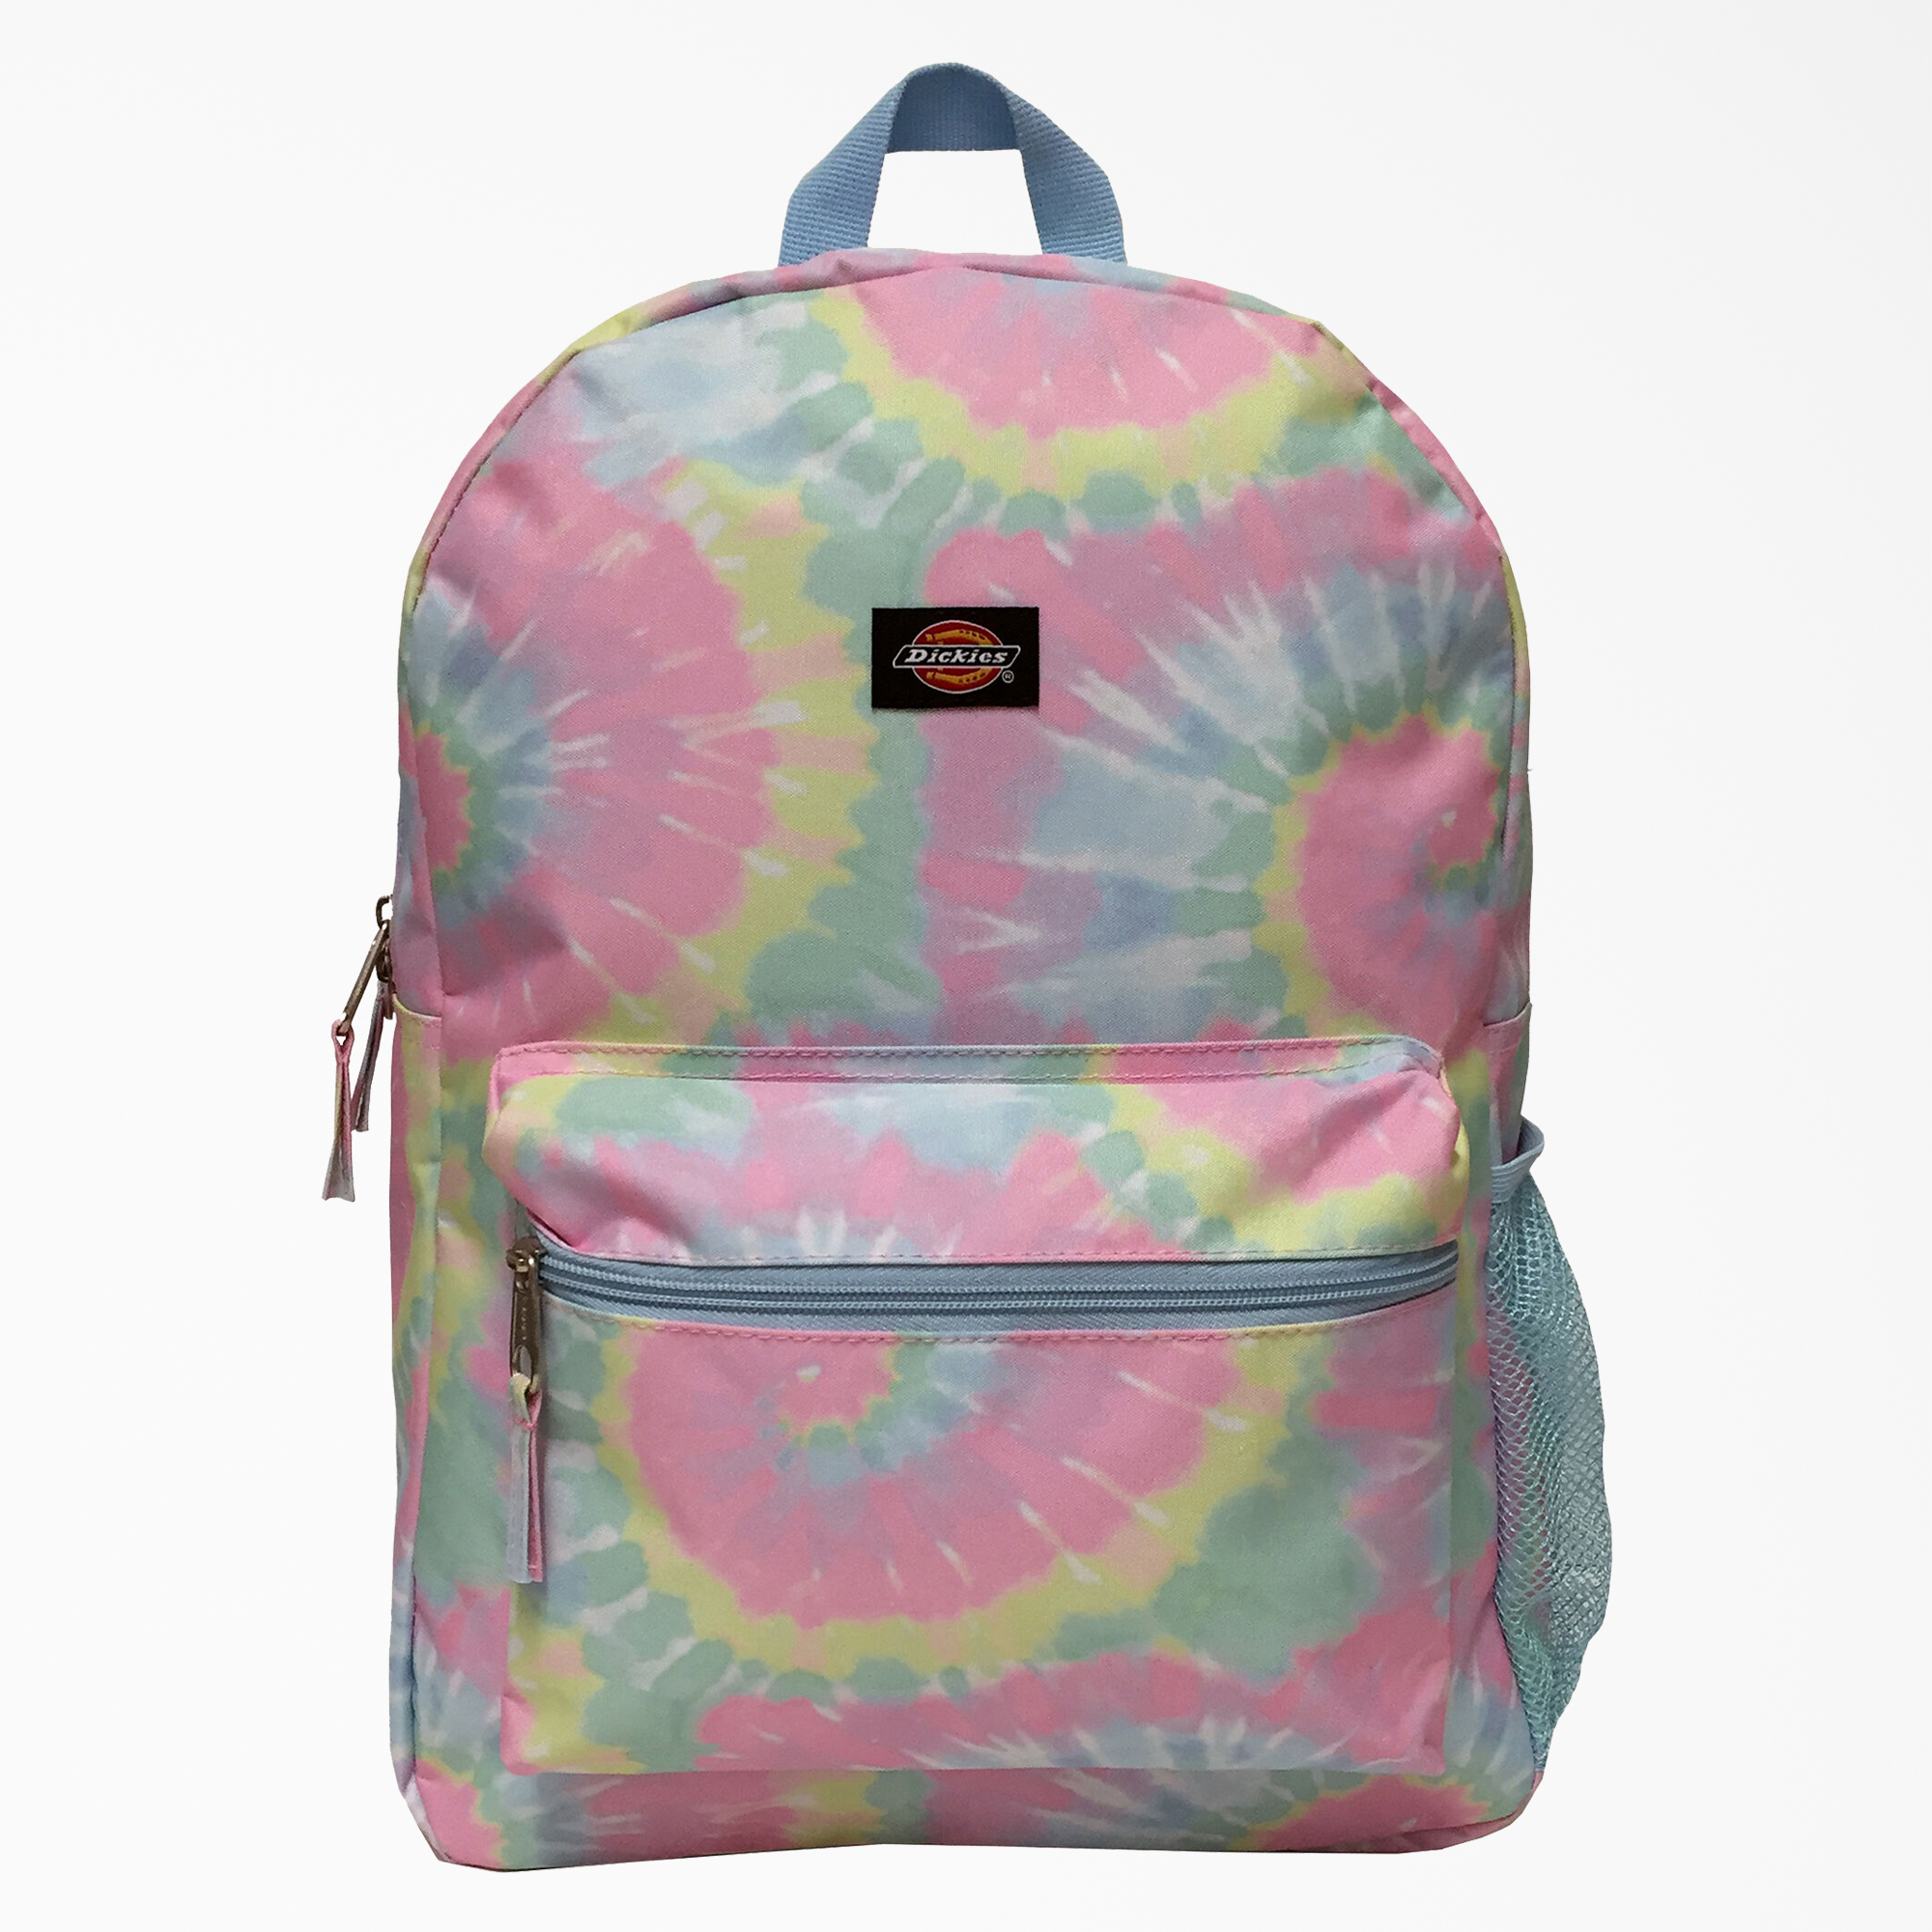 Student Tie Dye Backpack - Pastel Tie Dye (P2D)